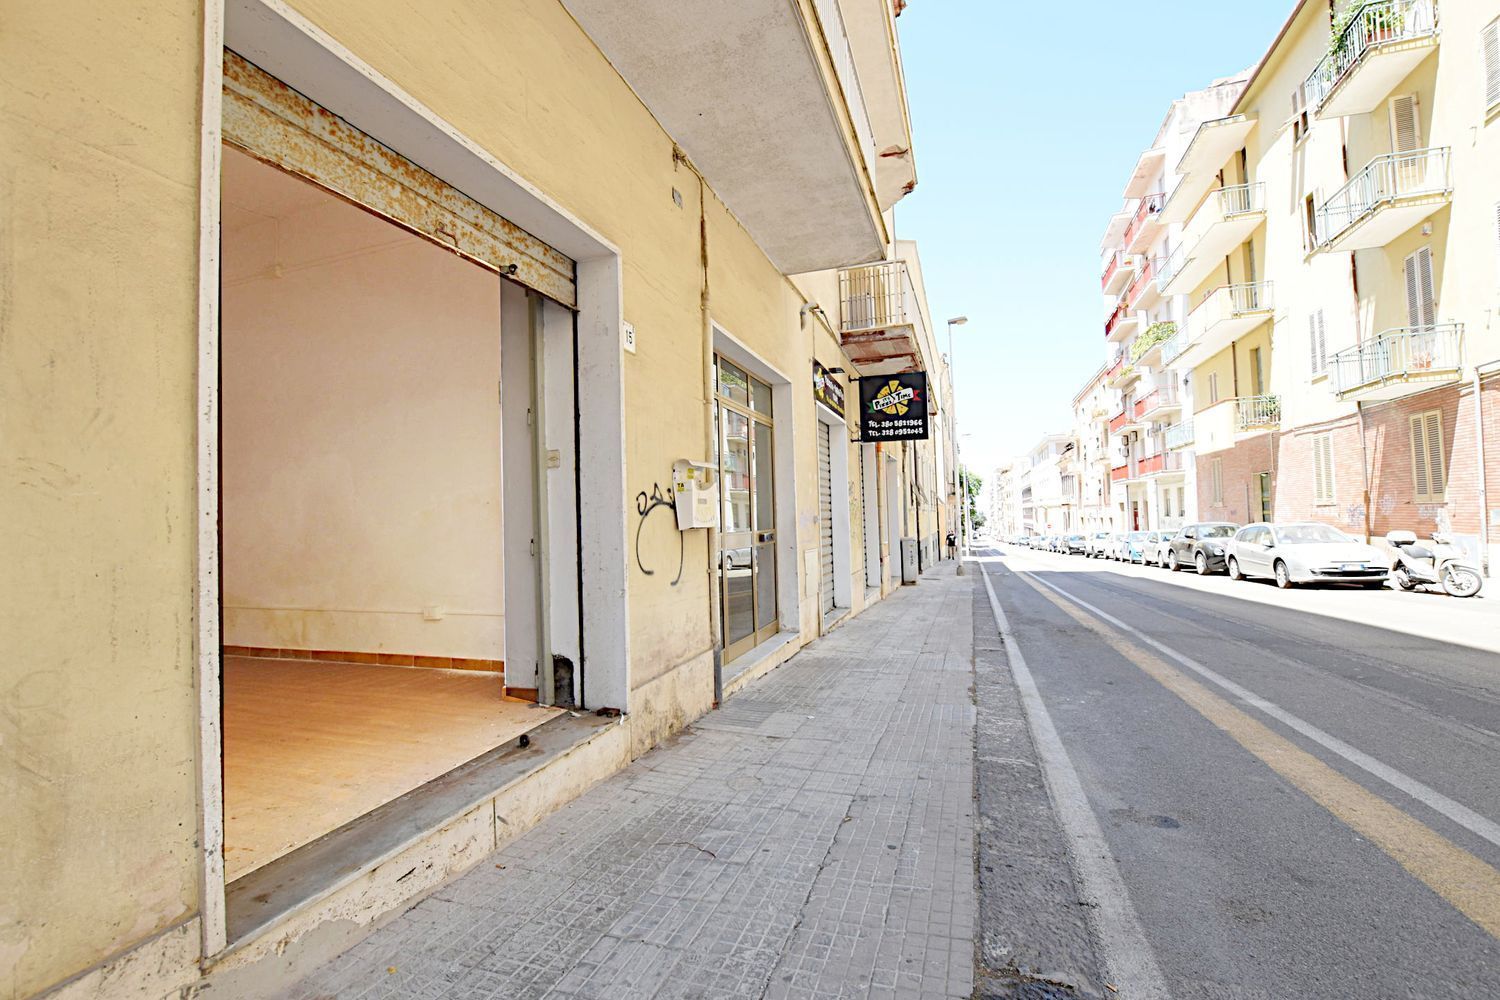 Locale commerciale in vendita in via diaz 15, Sassari